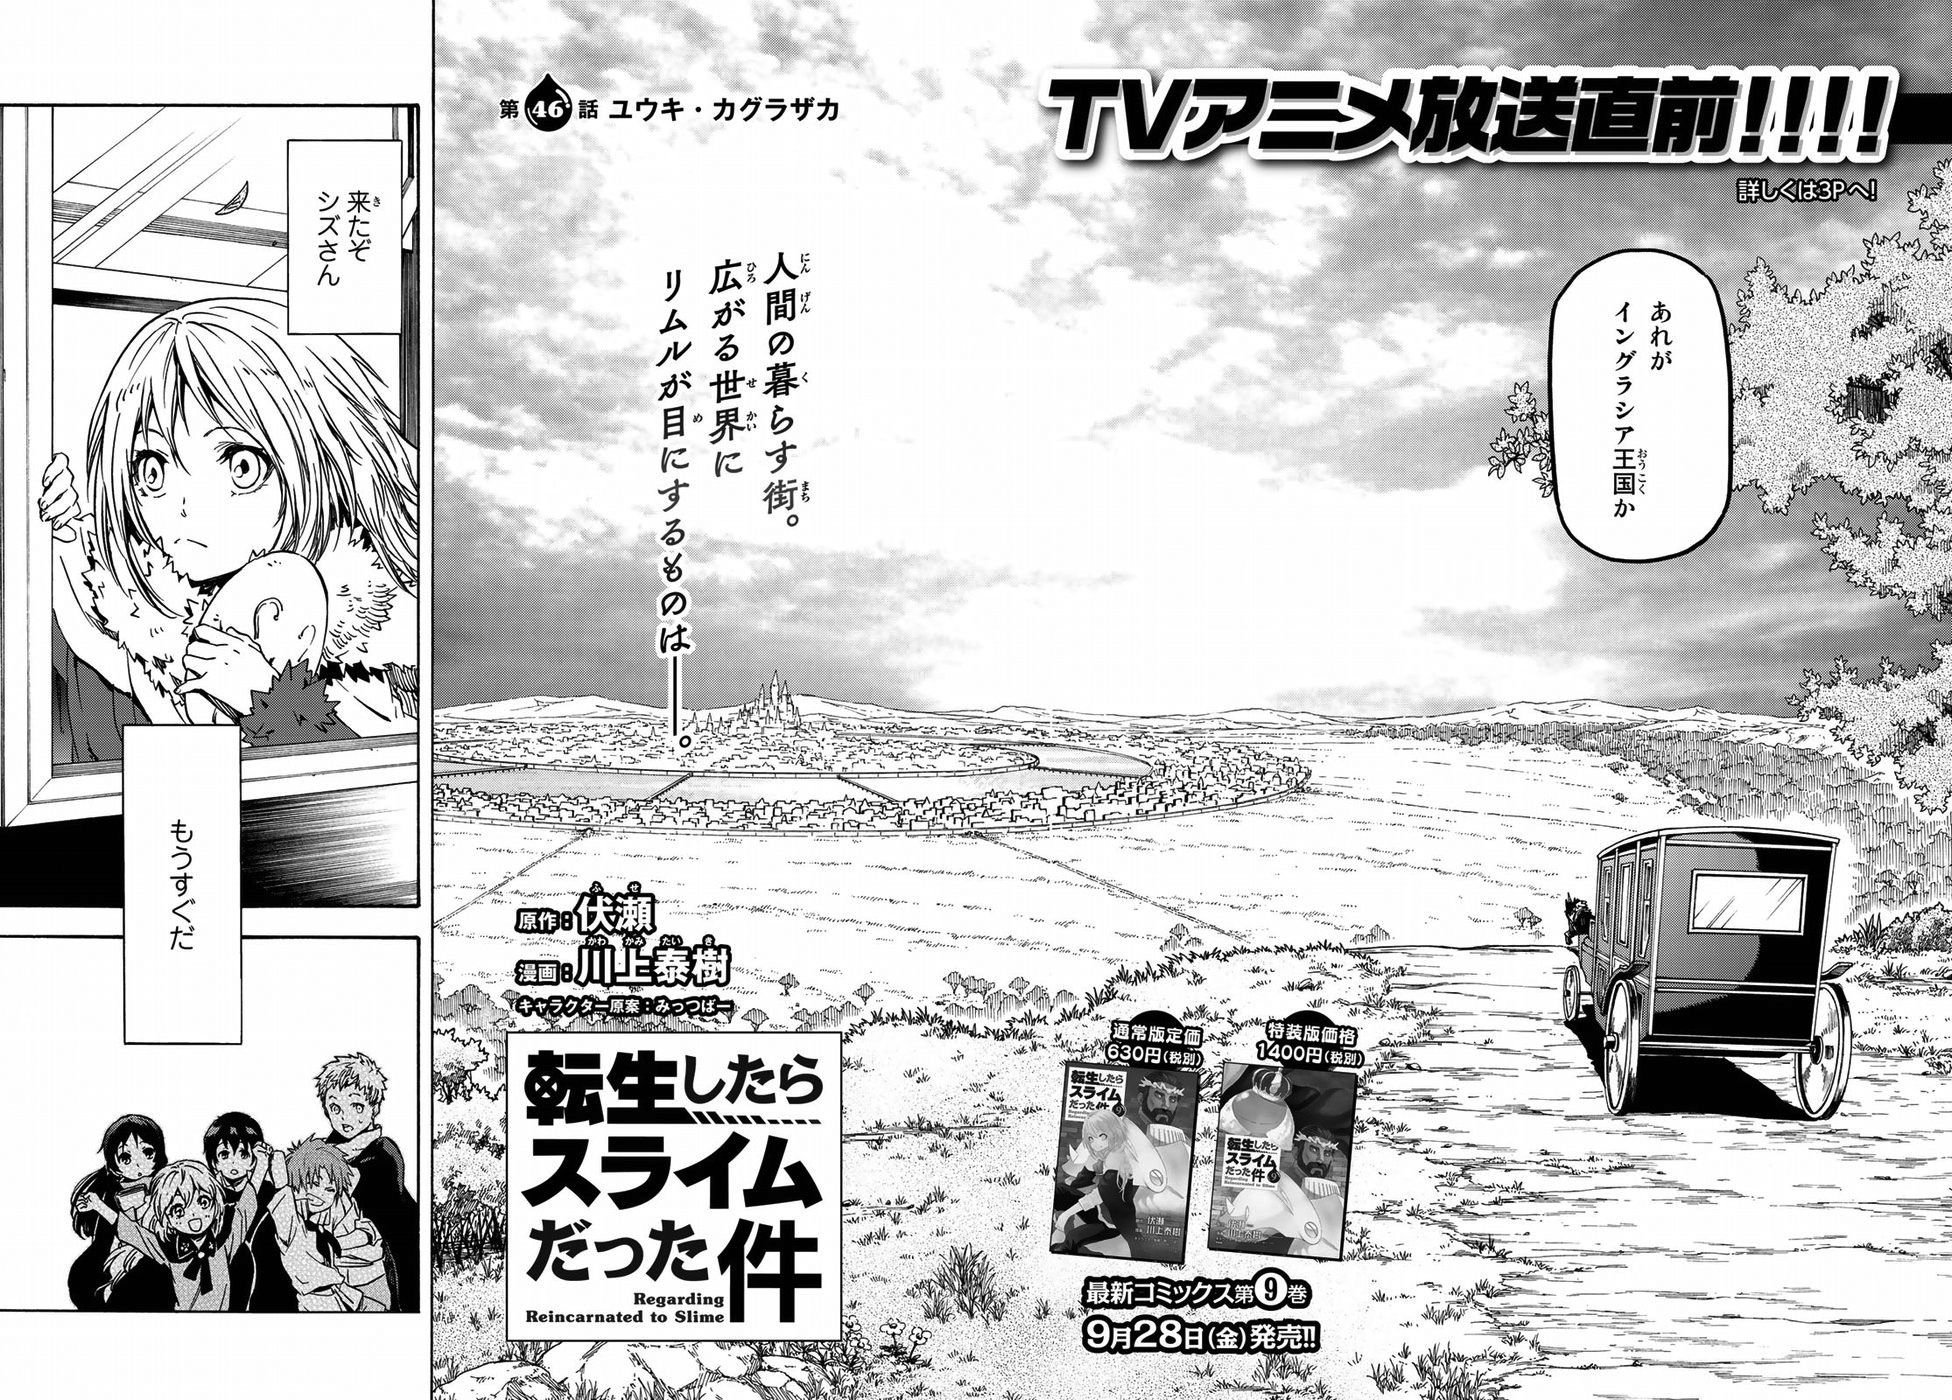 Tensei Shitara Slime Datta Ken Ch. 46 Yuuki Kagurazaka, Tensei Shitara  Slime Datta Ken Ch. 46 Yuuki Kagurazaka Page 4 (Load image 10) - Read Free  Manga Online at Ten Manga